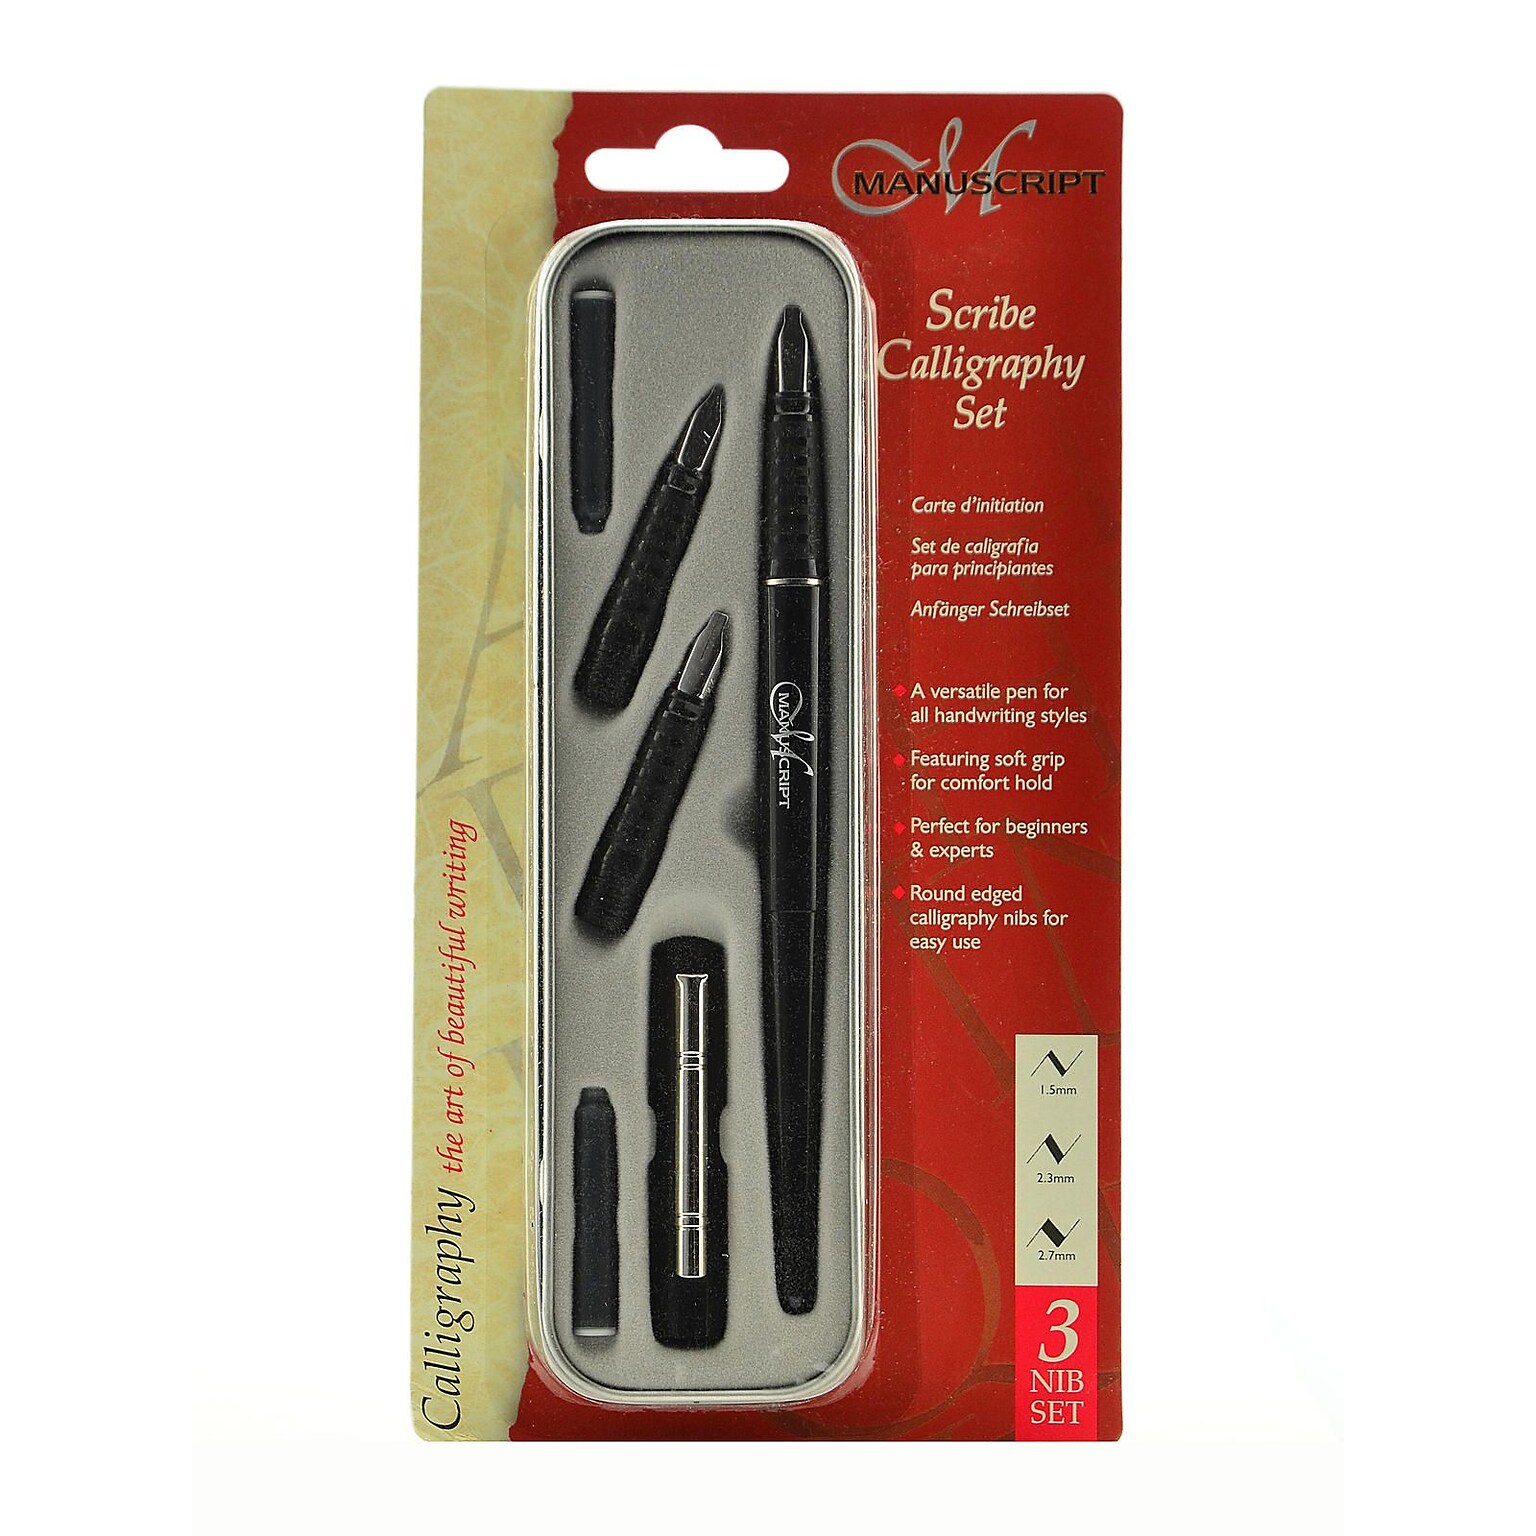 Manuscript Scribe Series Calligraphy Pen And Pen Set Pen And 3 Nib Set (MC4300)